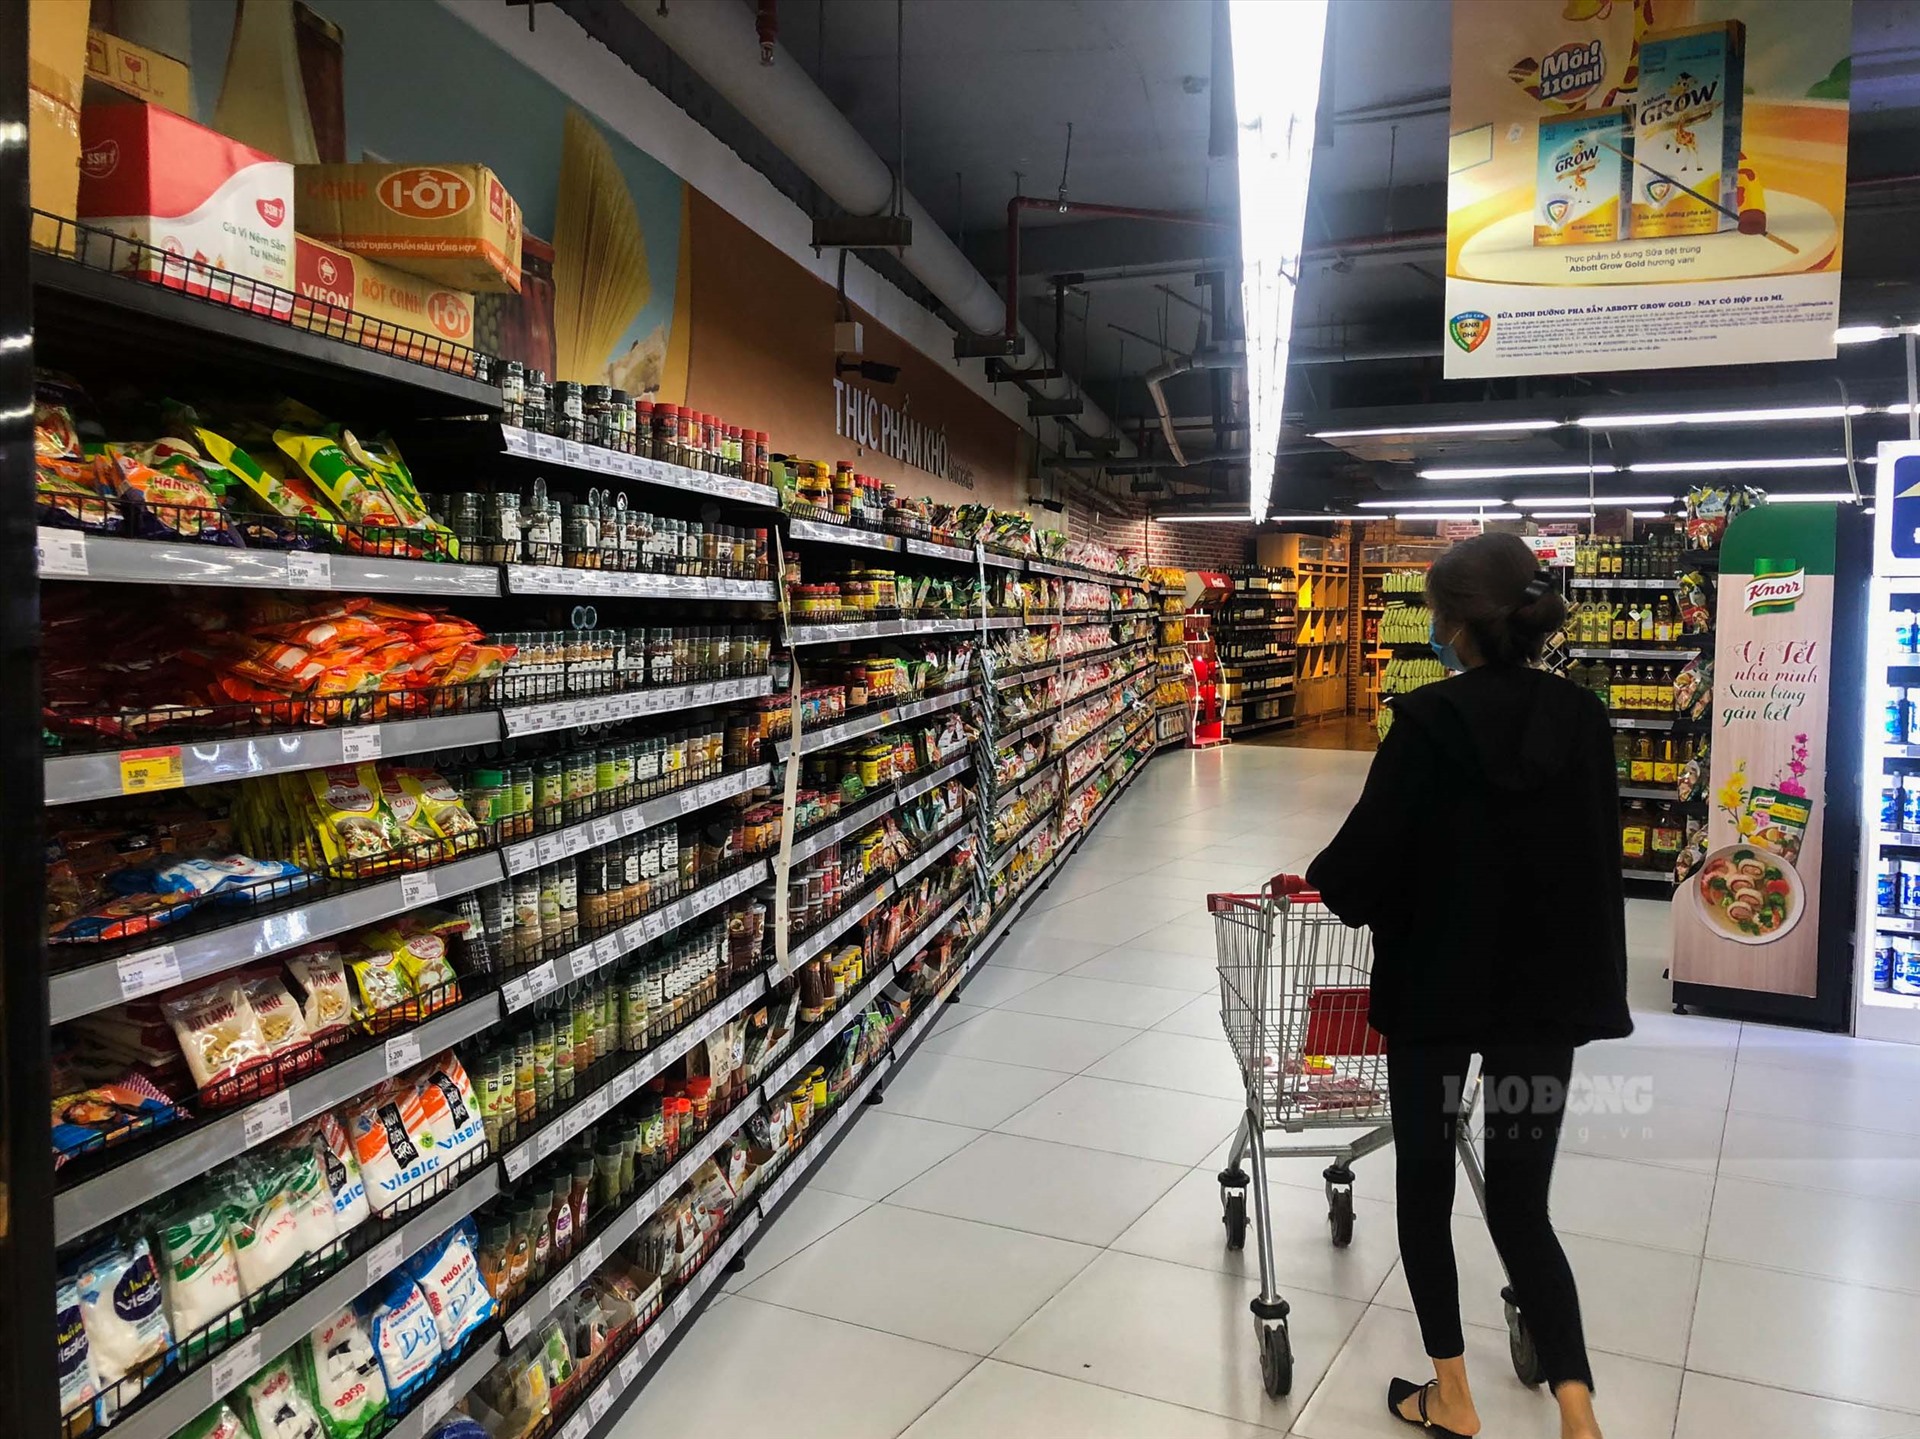 Theo ghi nhận của PV Báo Lao Động, nhiều siêu thị lớn trên địa bàn Hà Nội như Big C, Vinmart, Mega Martket, Aeon Mail, Hapro... lượng hàng hóa đều rất dồi dào.